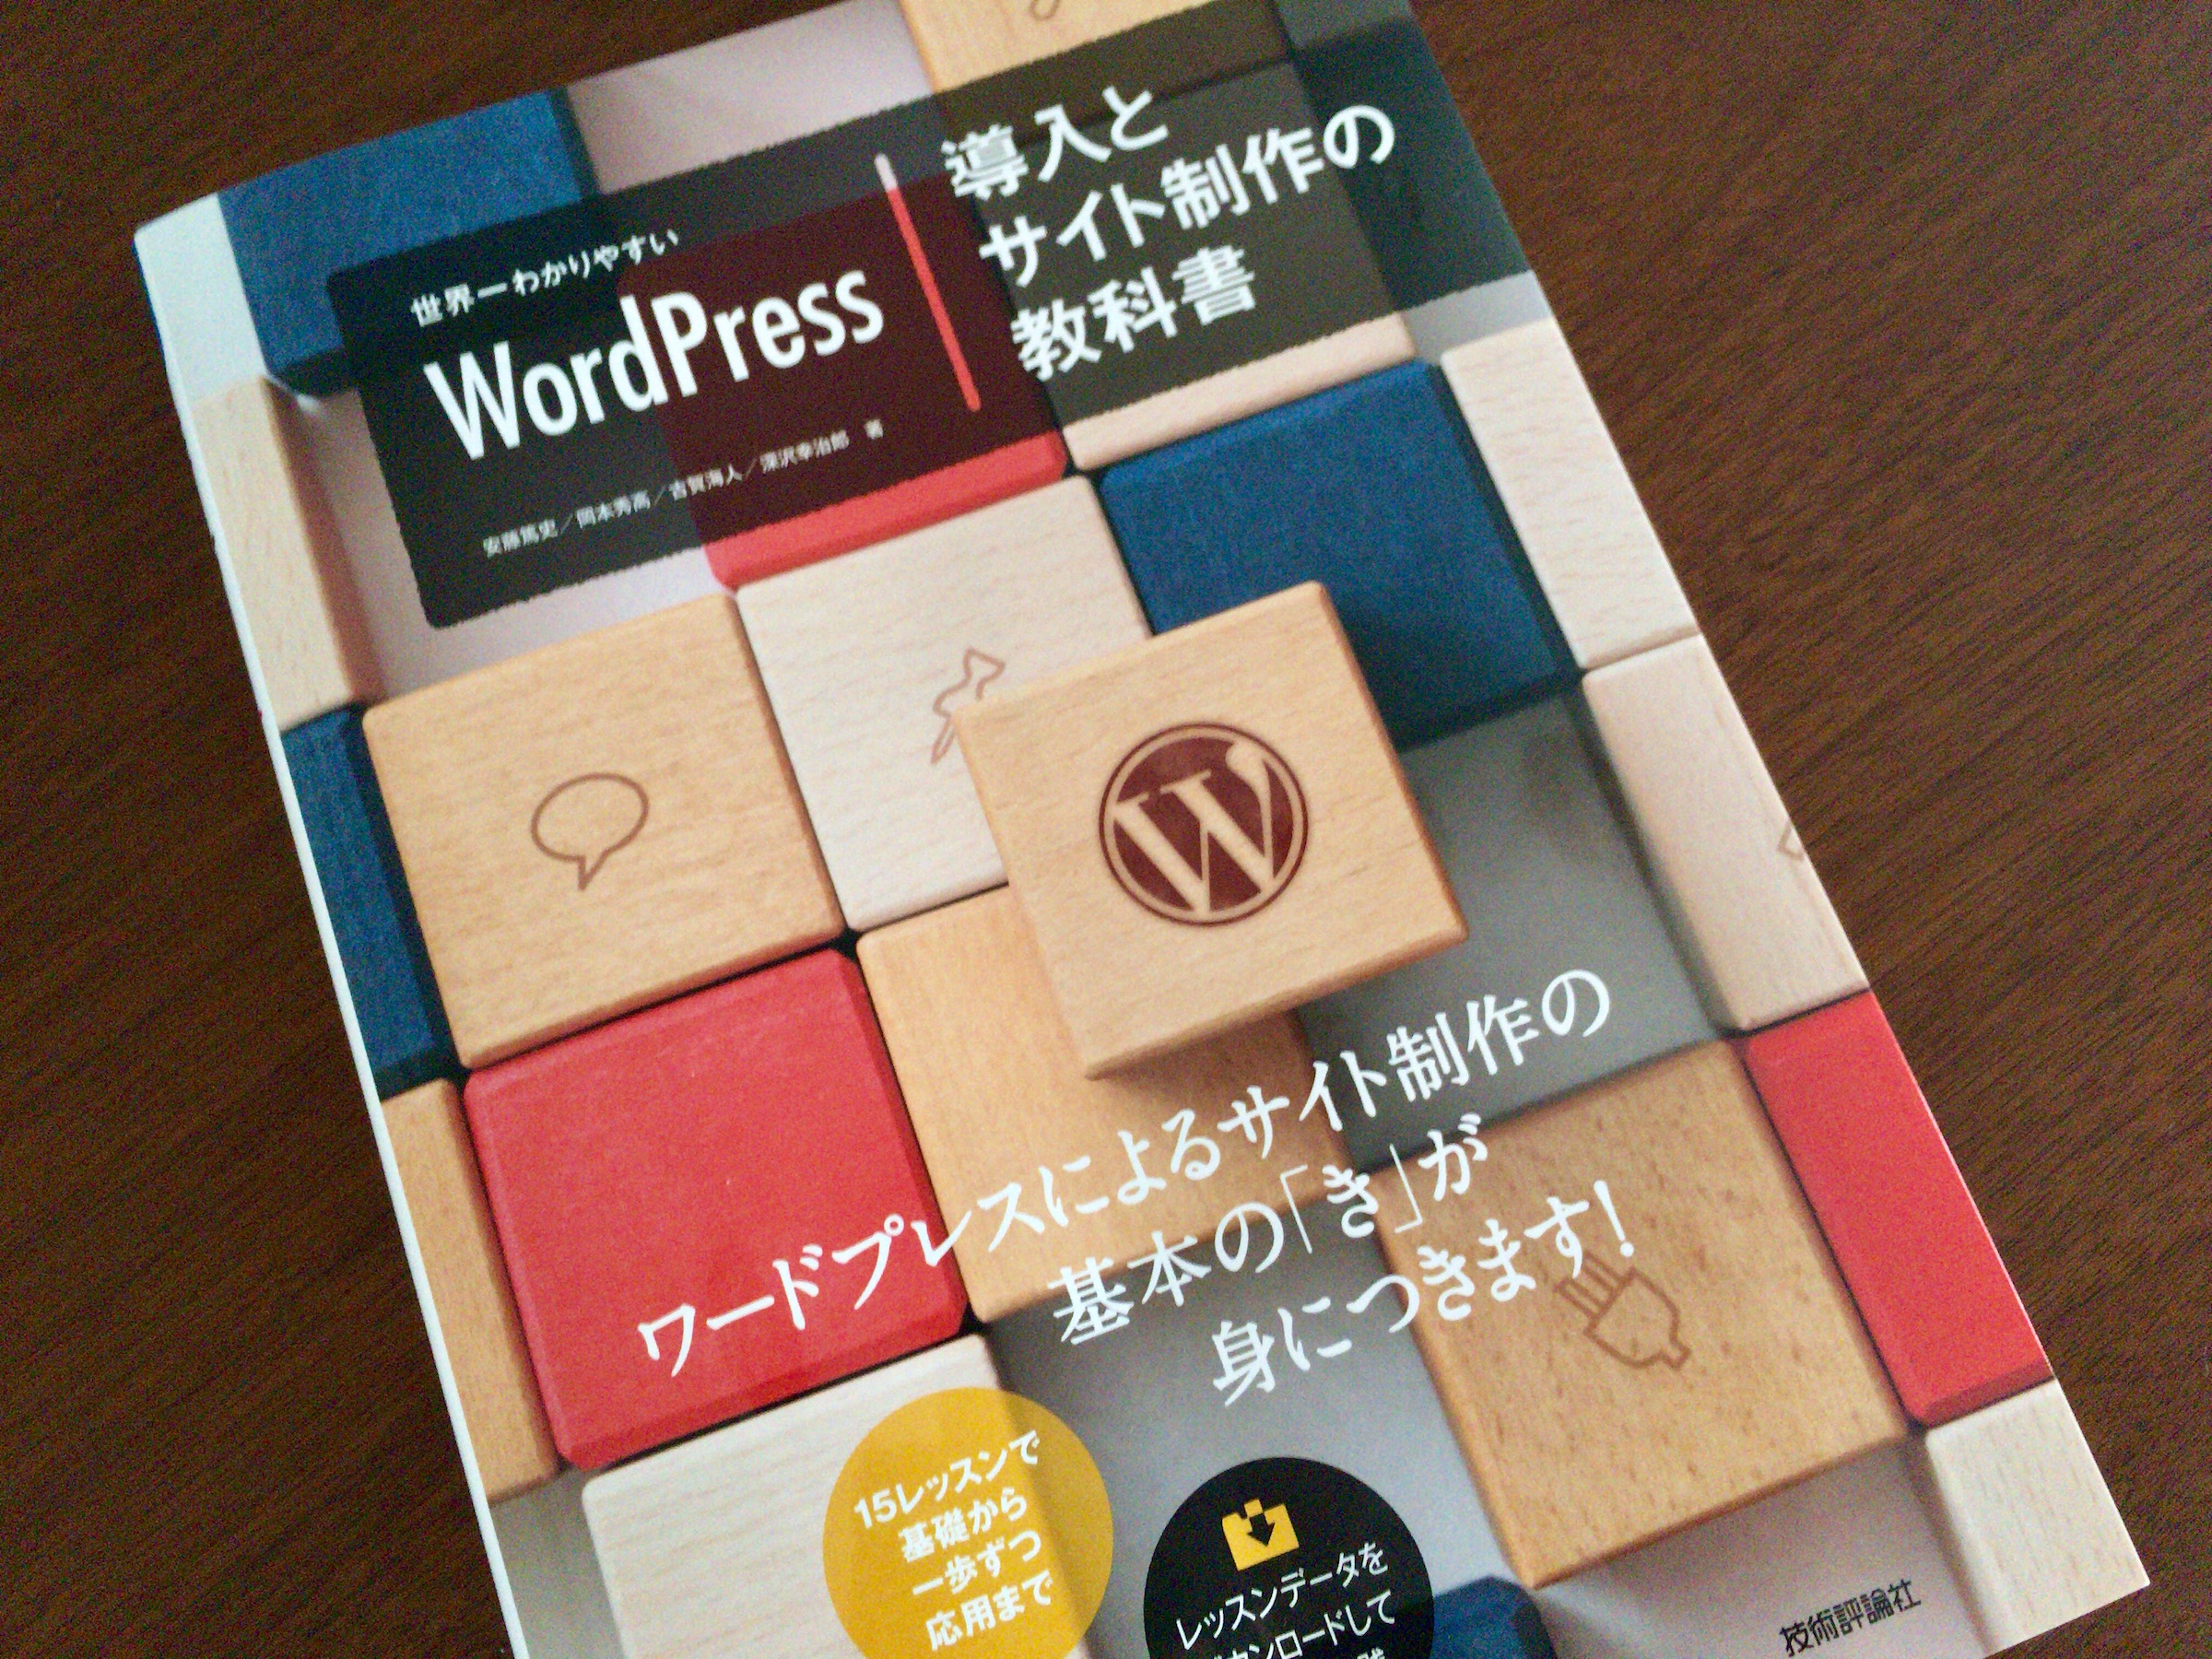 制作の基本がバランスよくまとまった「世界一わかりやすいWordPress 導入とサイト制作の教科書」